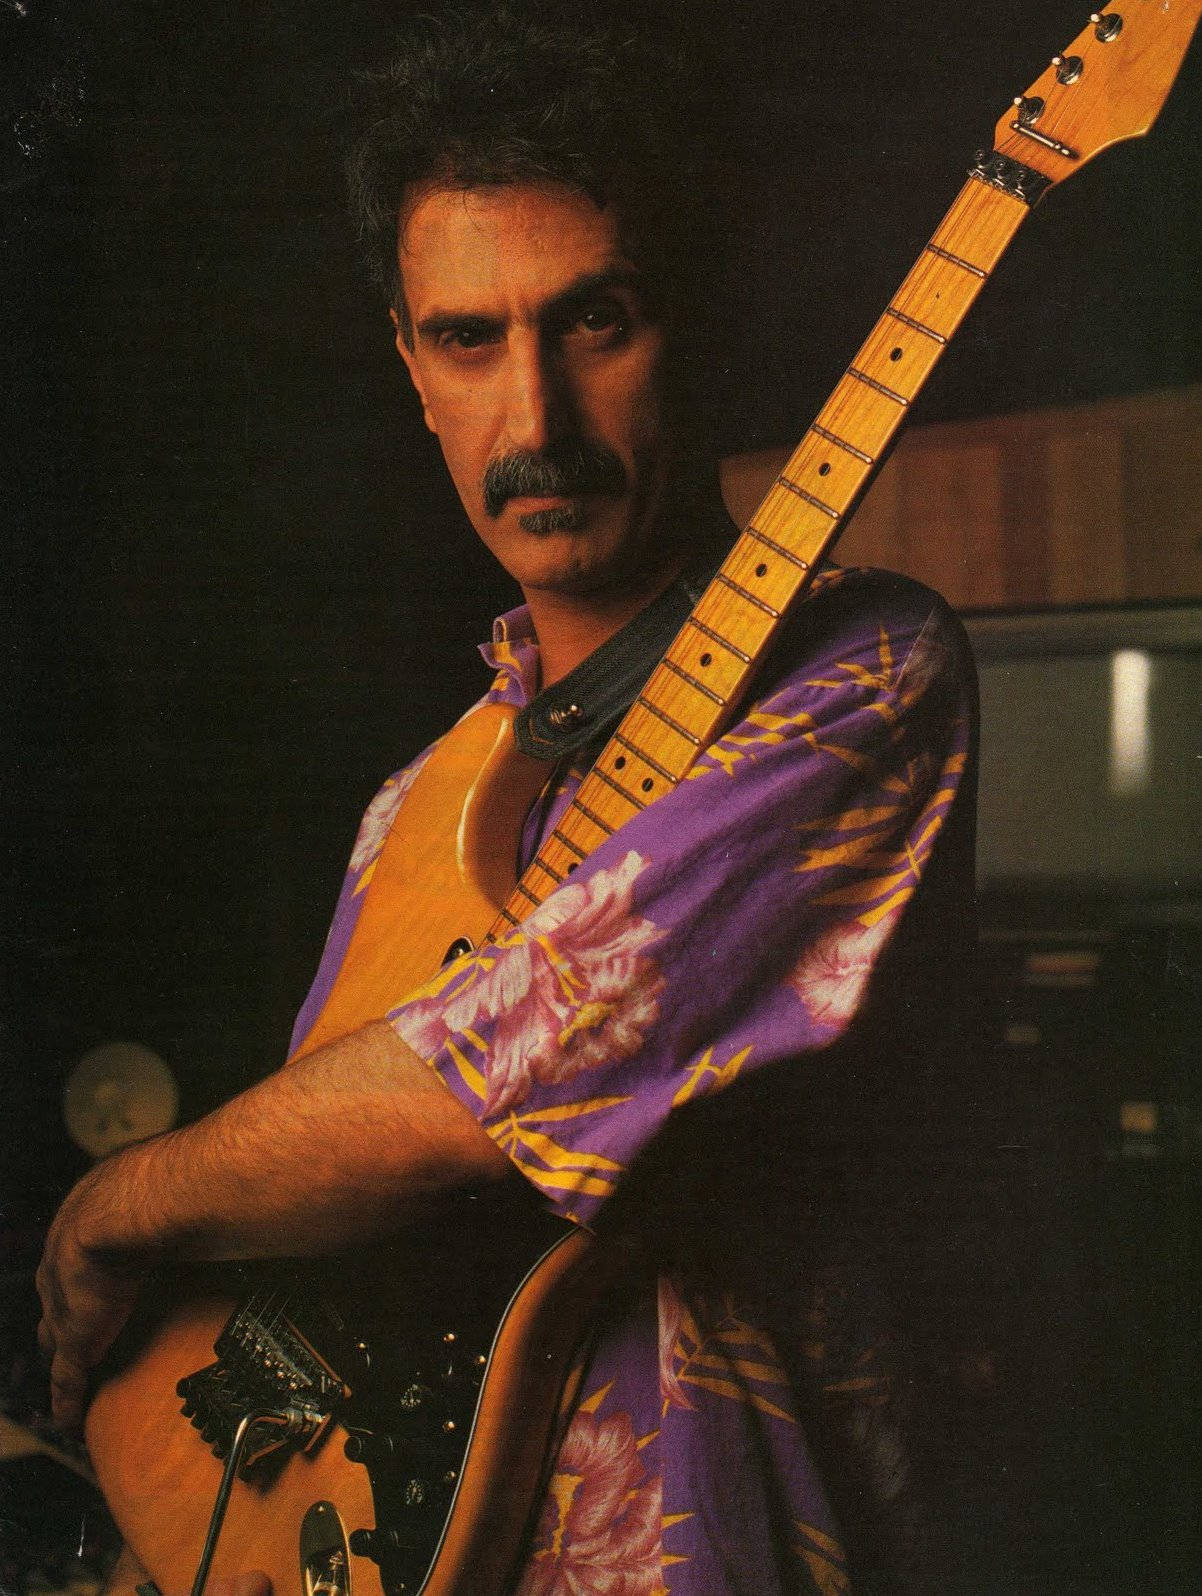 Bandleader Frank Zappa